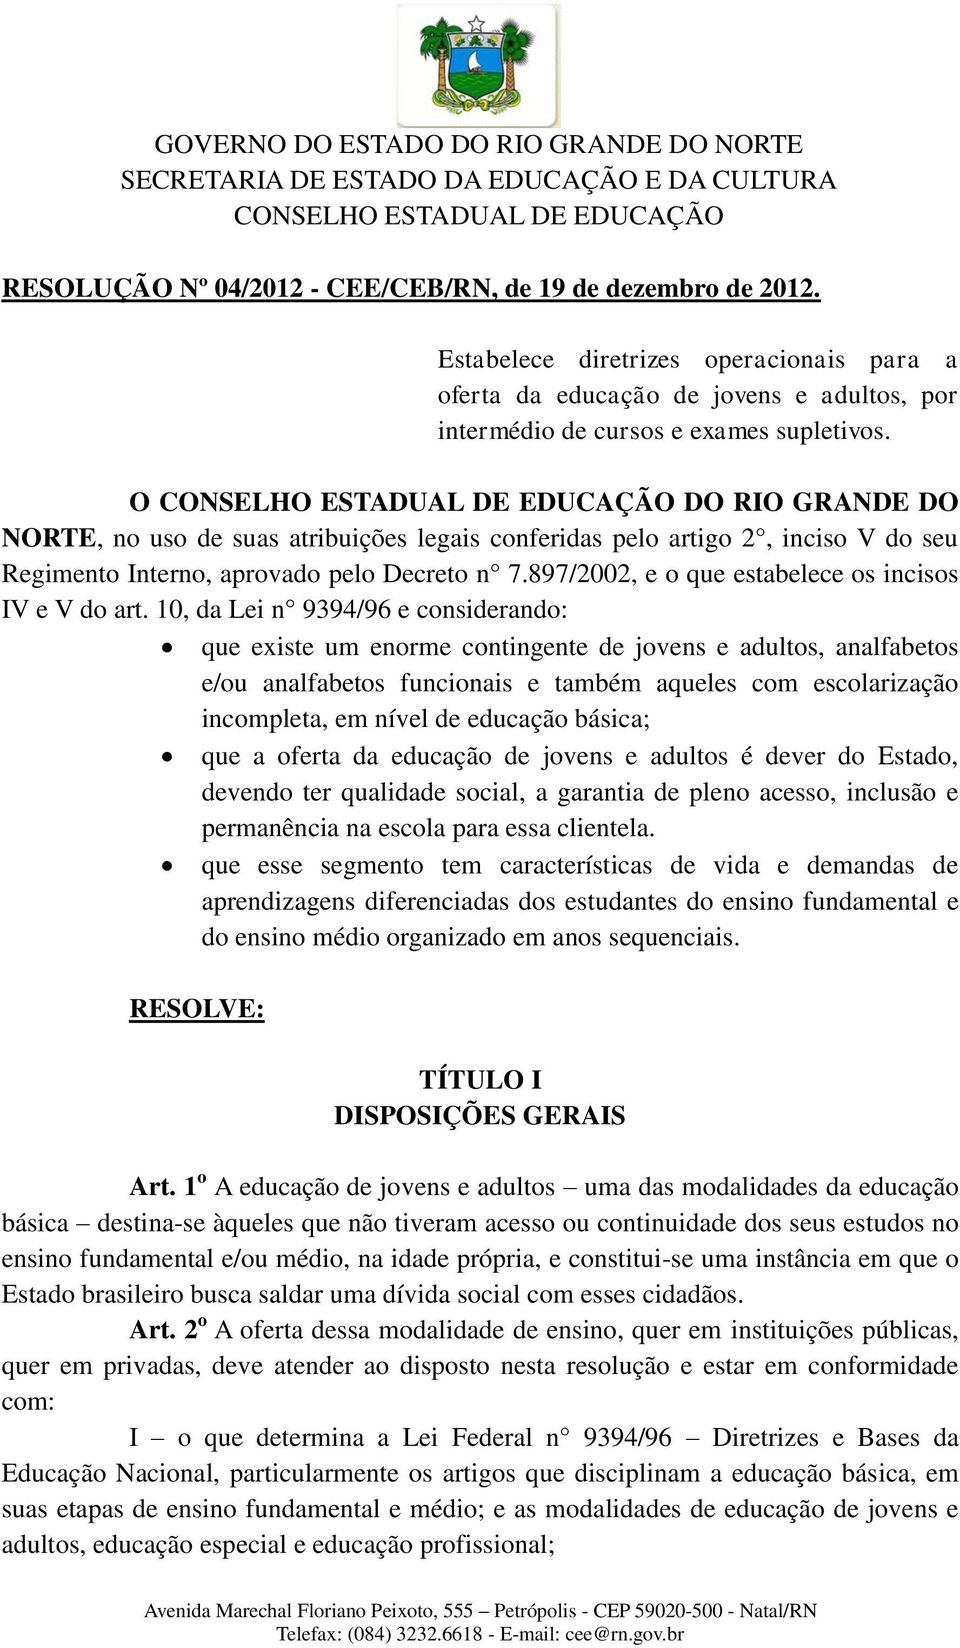 O CONSELHO ESTADUAL DE EDUCAÇÃO DO RIO GRANDE DO NORTE, no uso de suas atribuições legais conferidas pelo artigo 2, inciso V do seu Regimento Interno, aprovado pelo Decreto n 7.